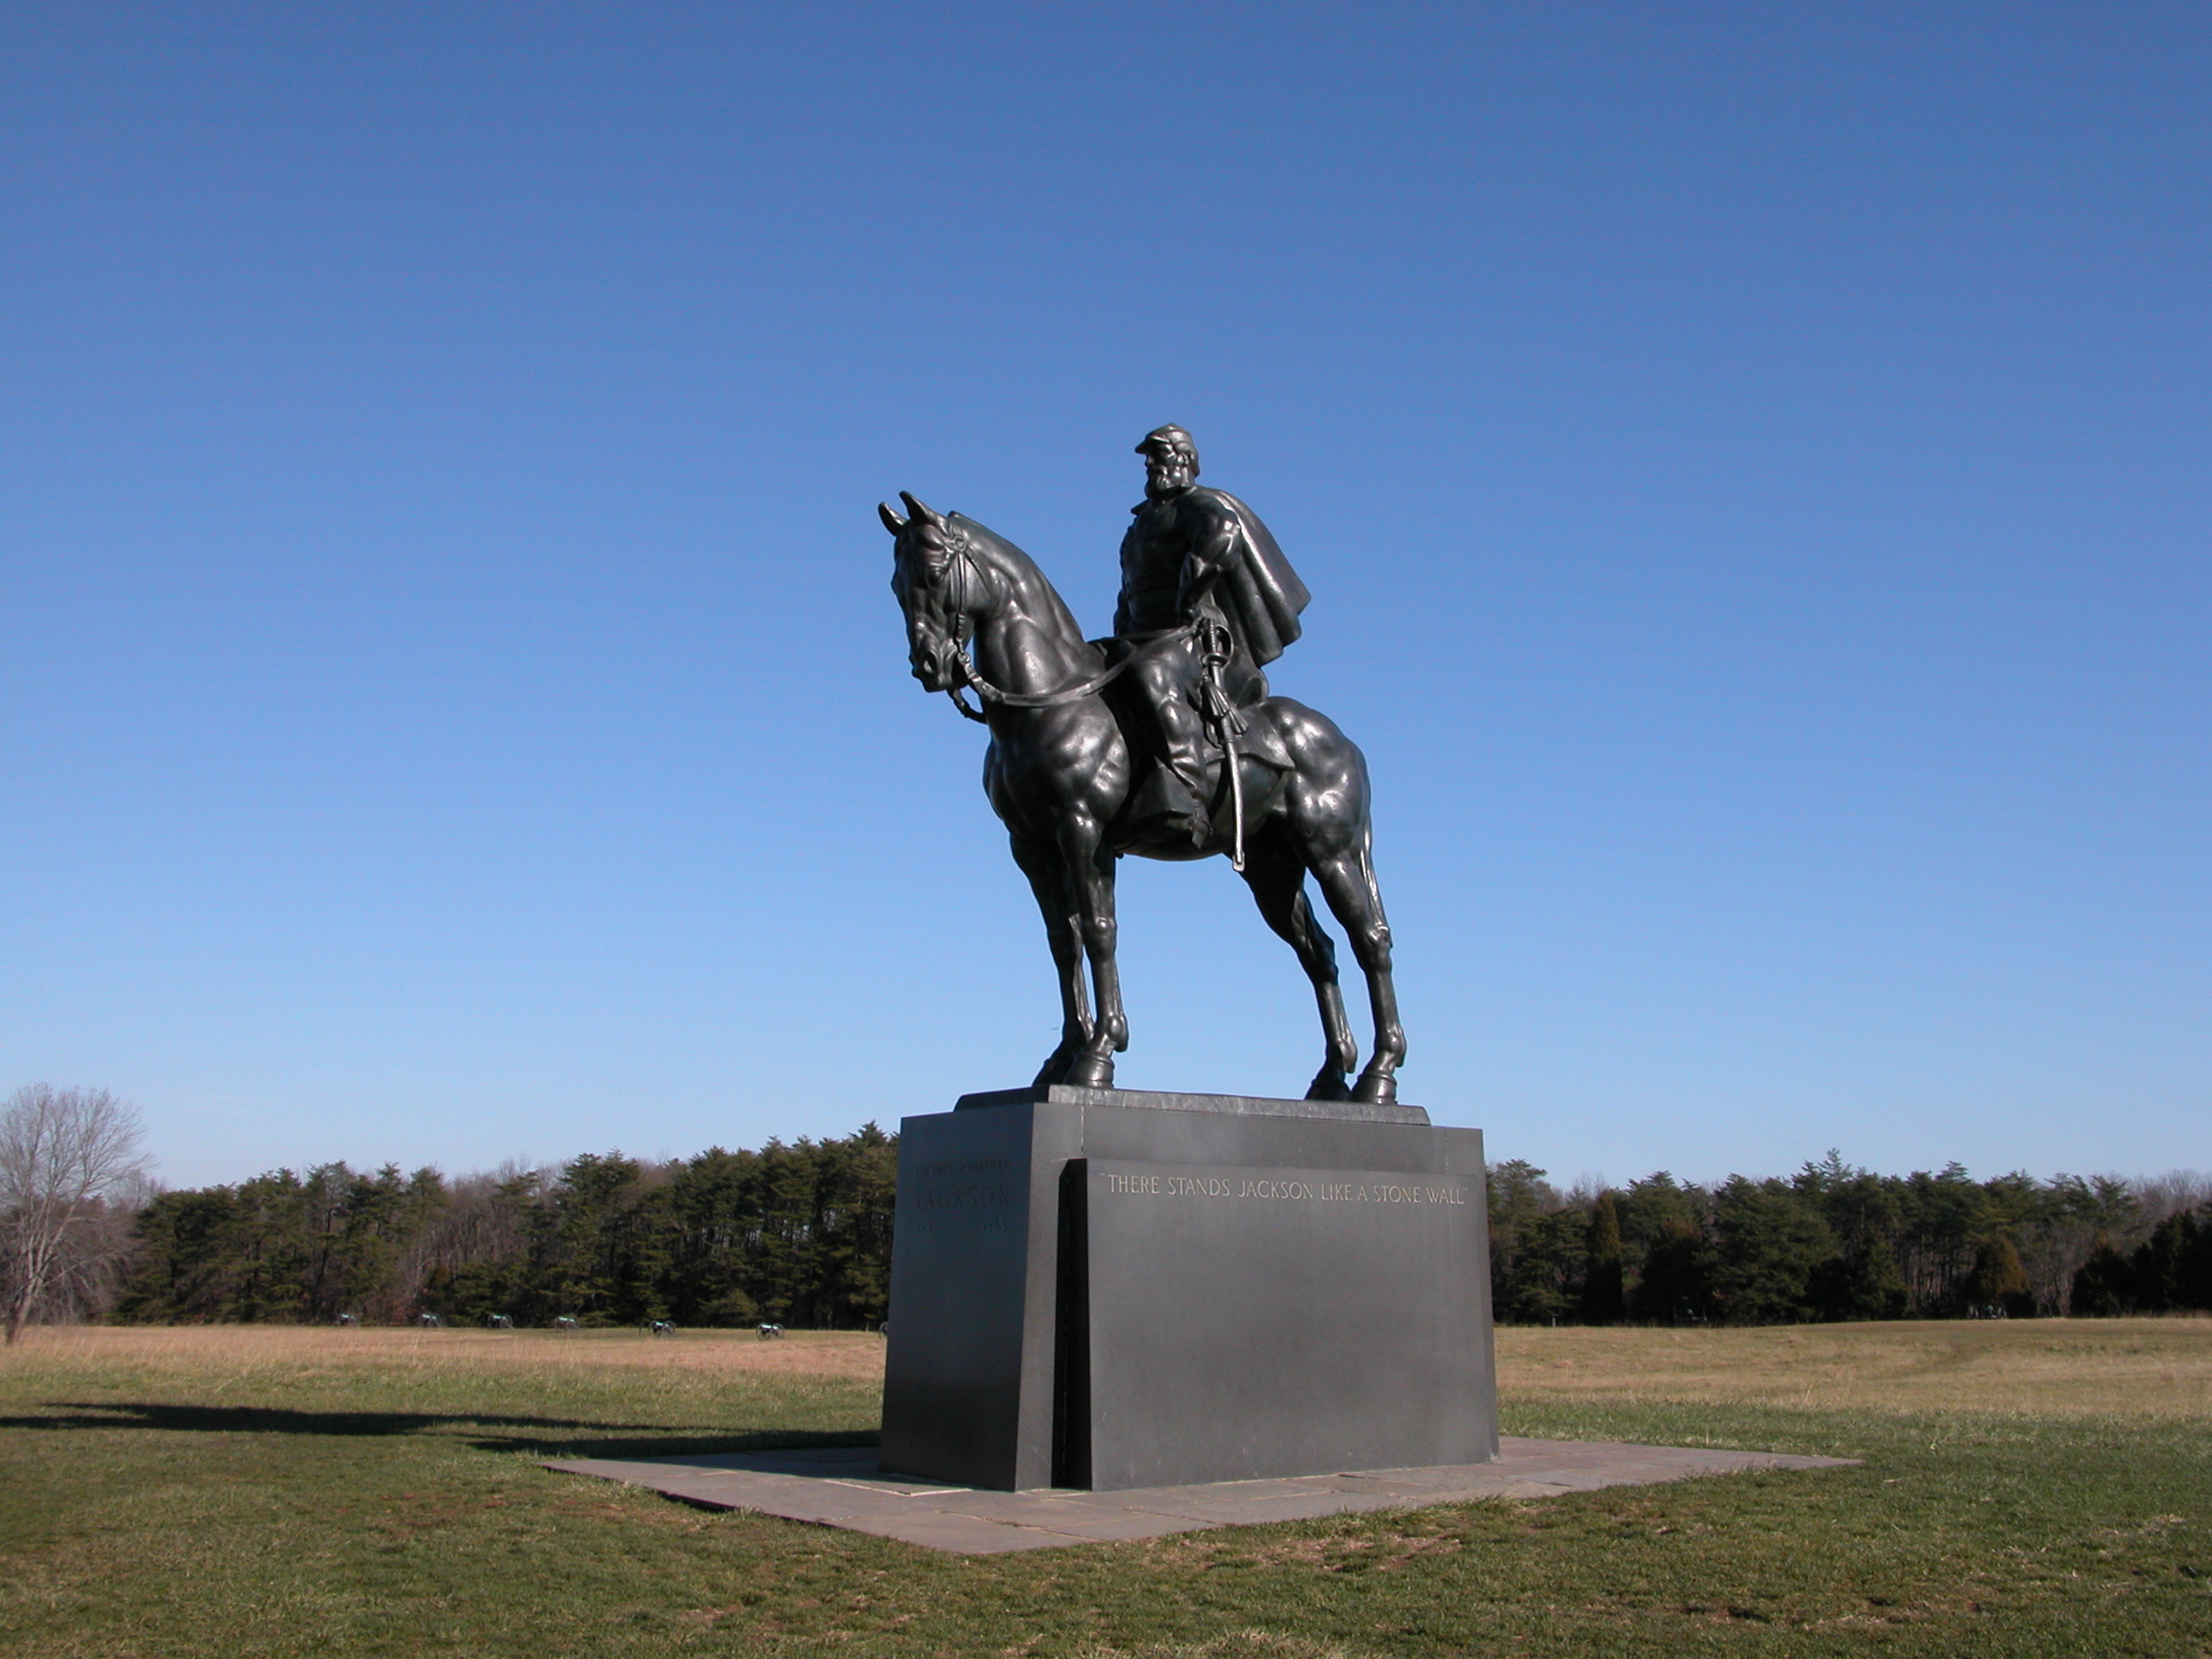 Bronze statue of Gen. T. J. "Stonewall" Jackson on horseback in an open field.